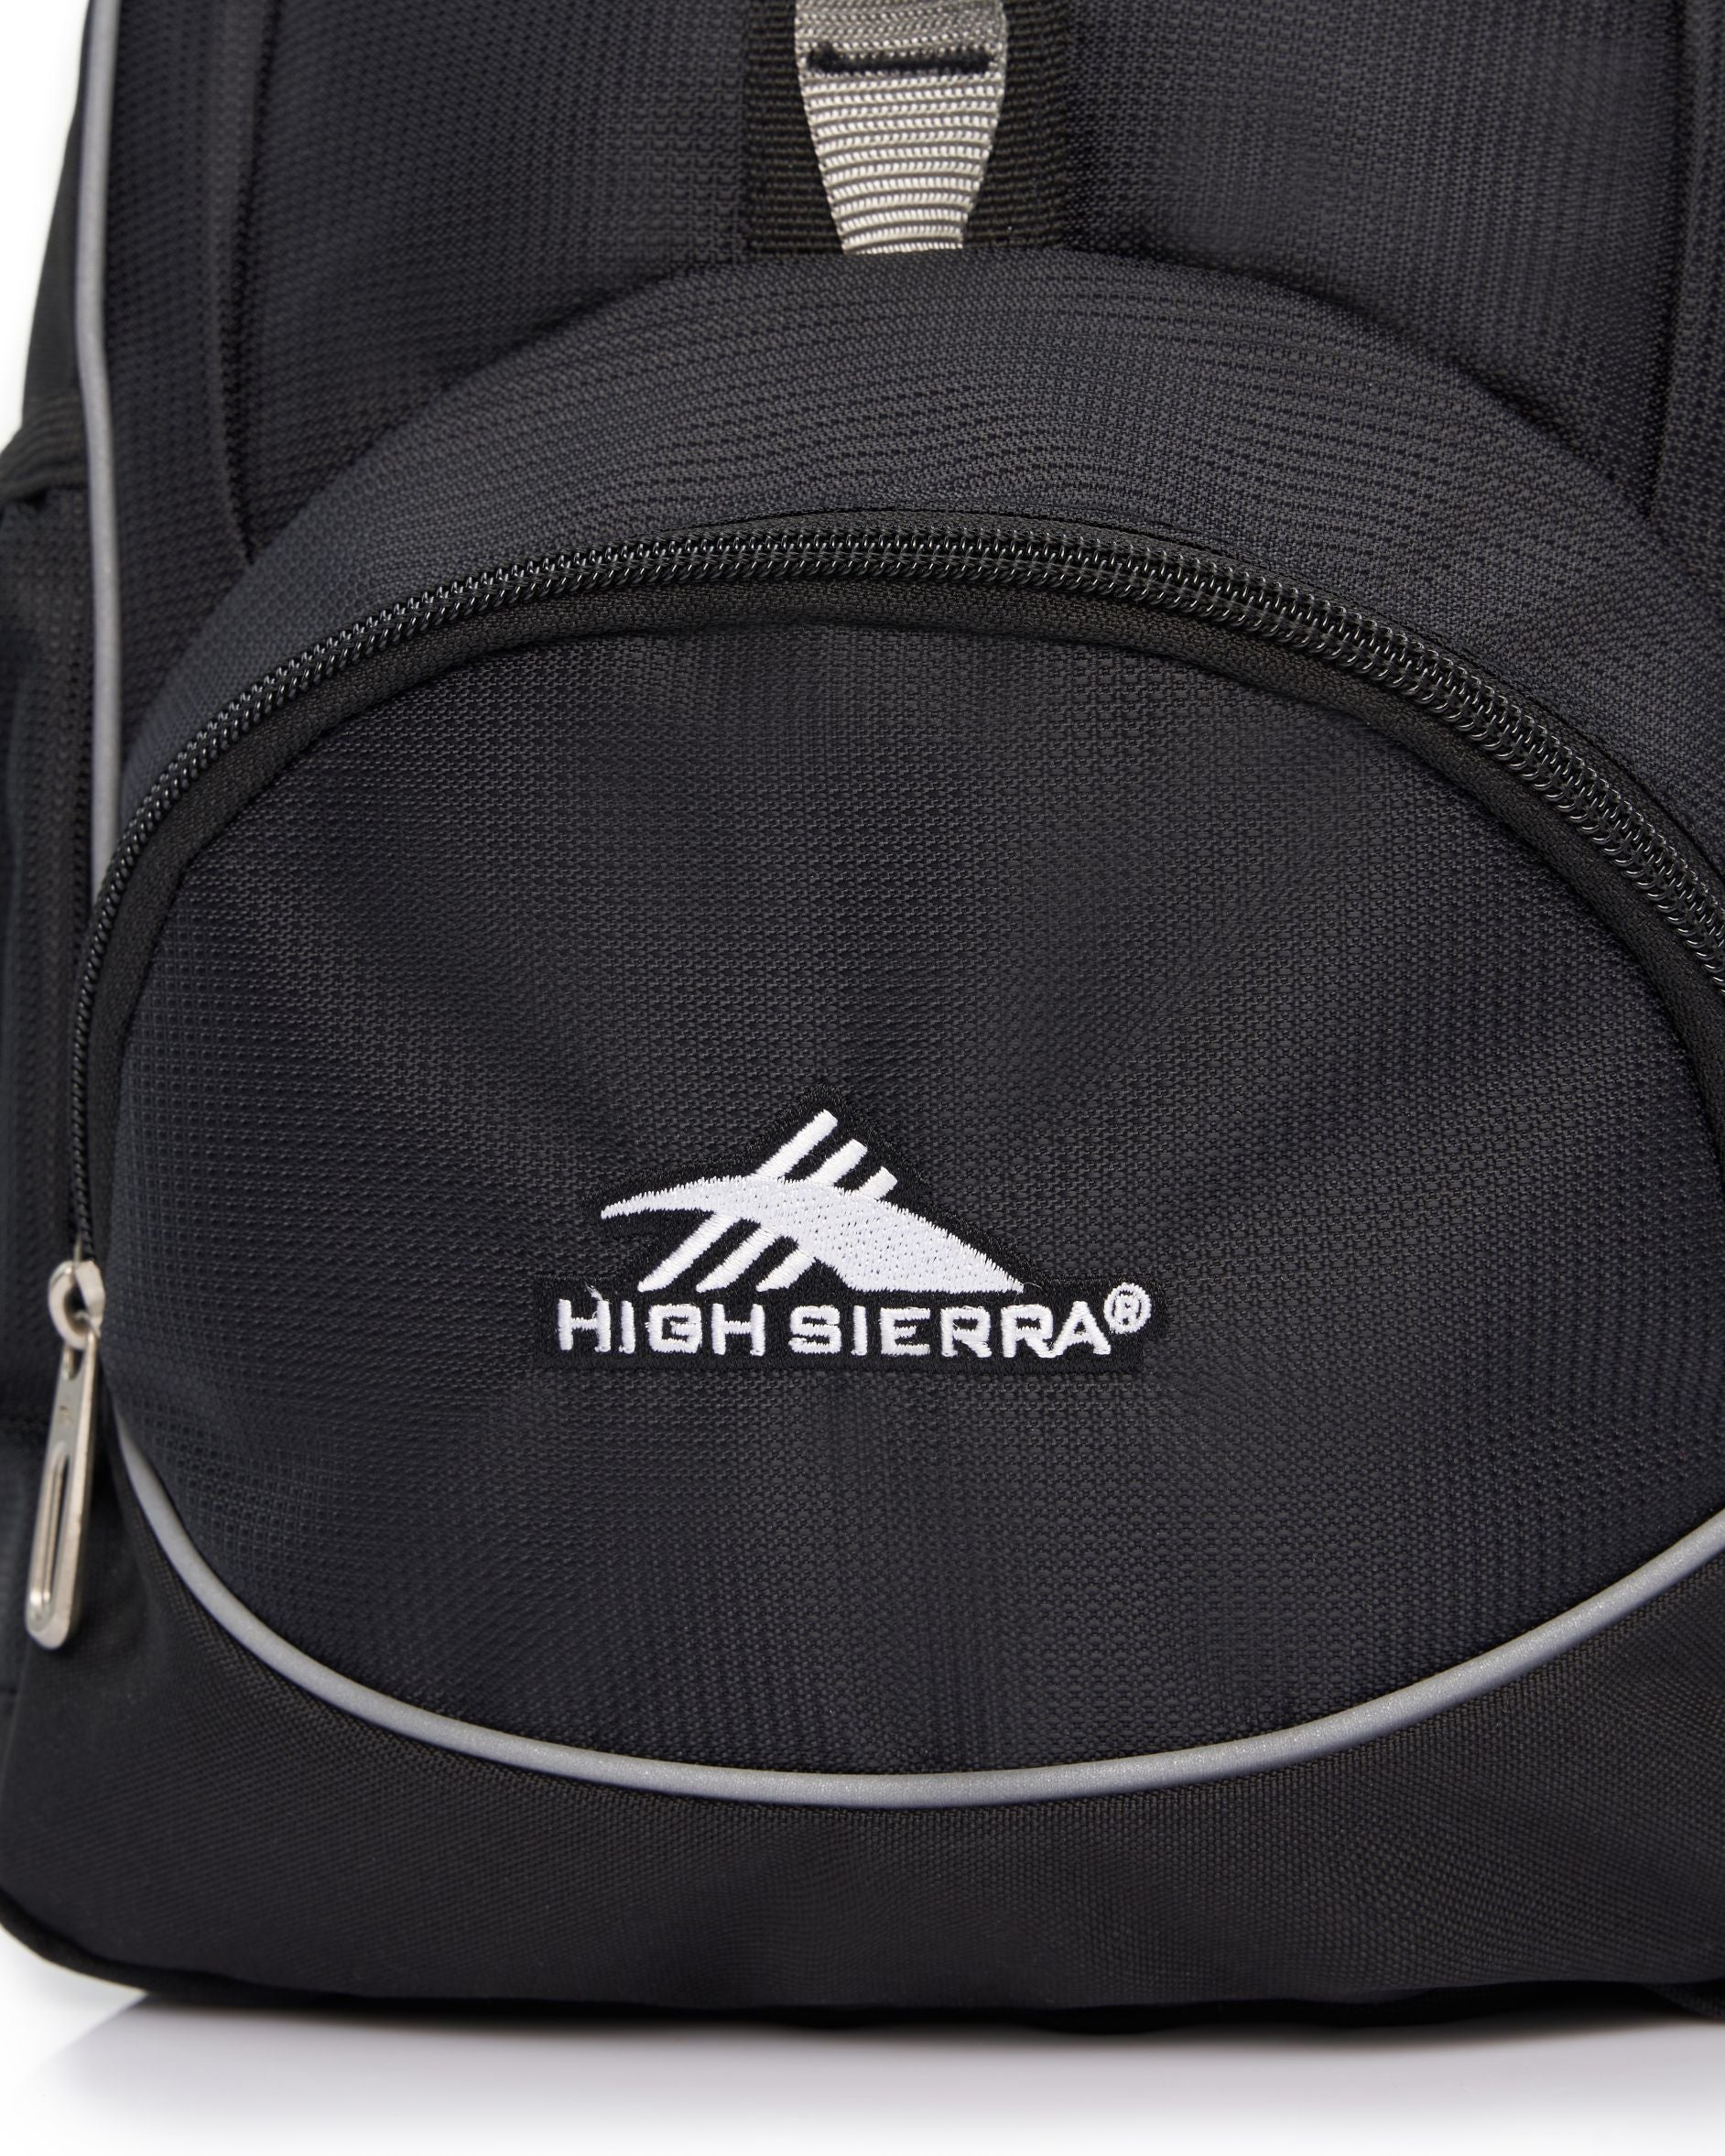 High Sierra - Mini Backpack 2.0 - Black/Silver-8